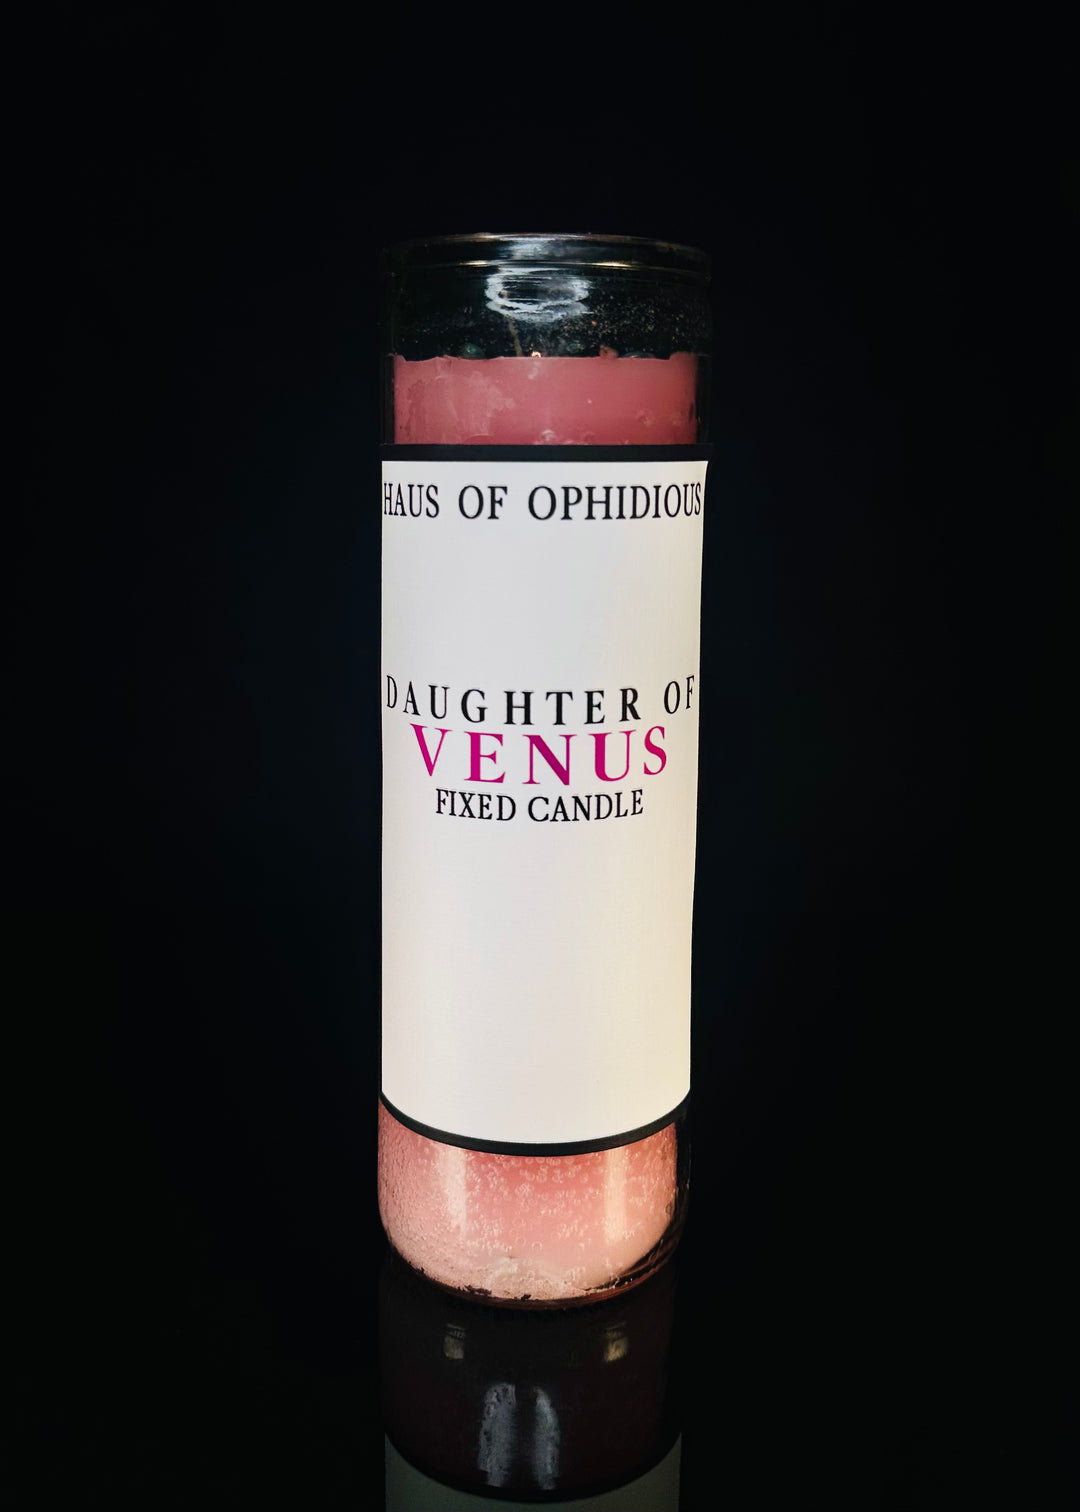 Daughter of Venus Candles